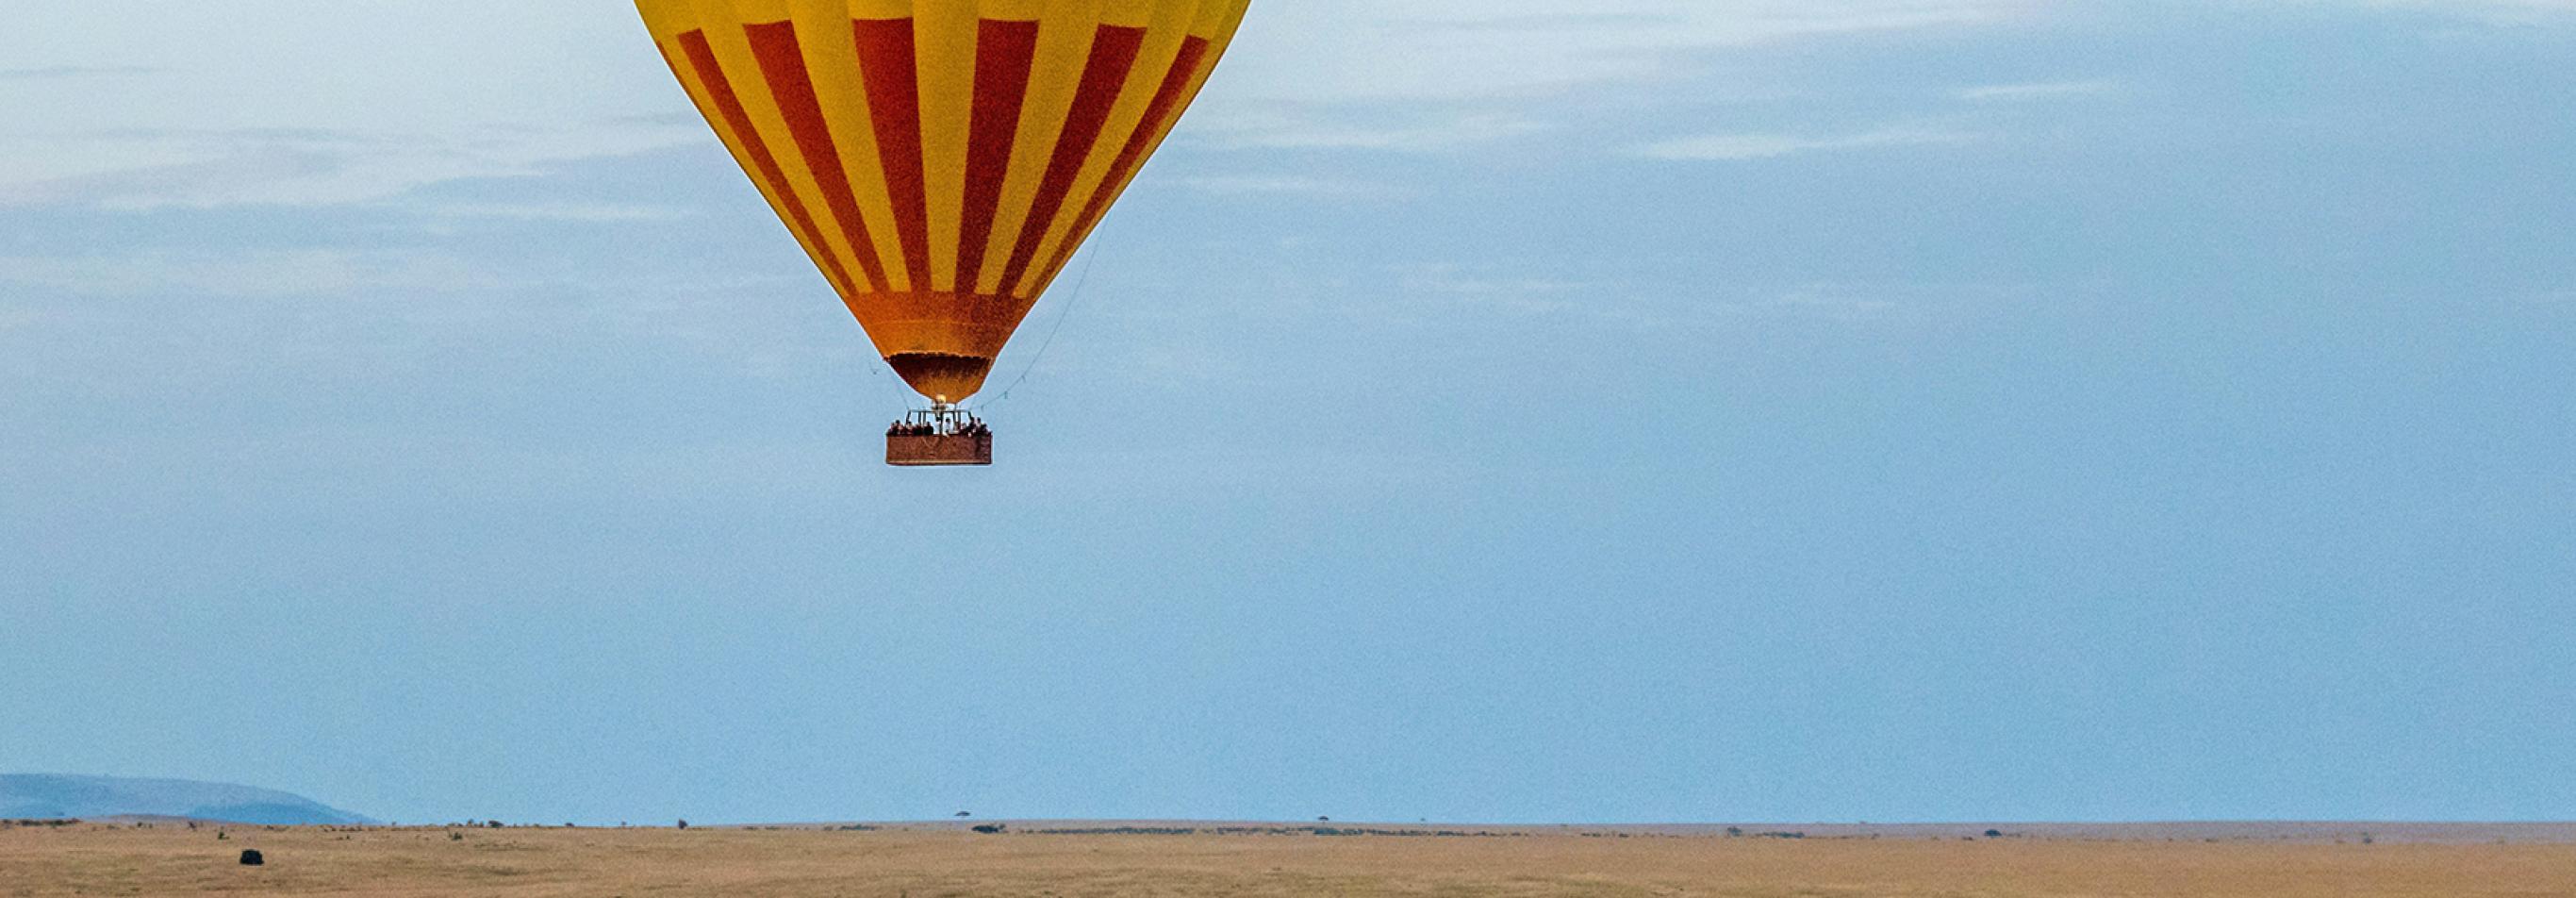 Balloon Masai Mara Kenya